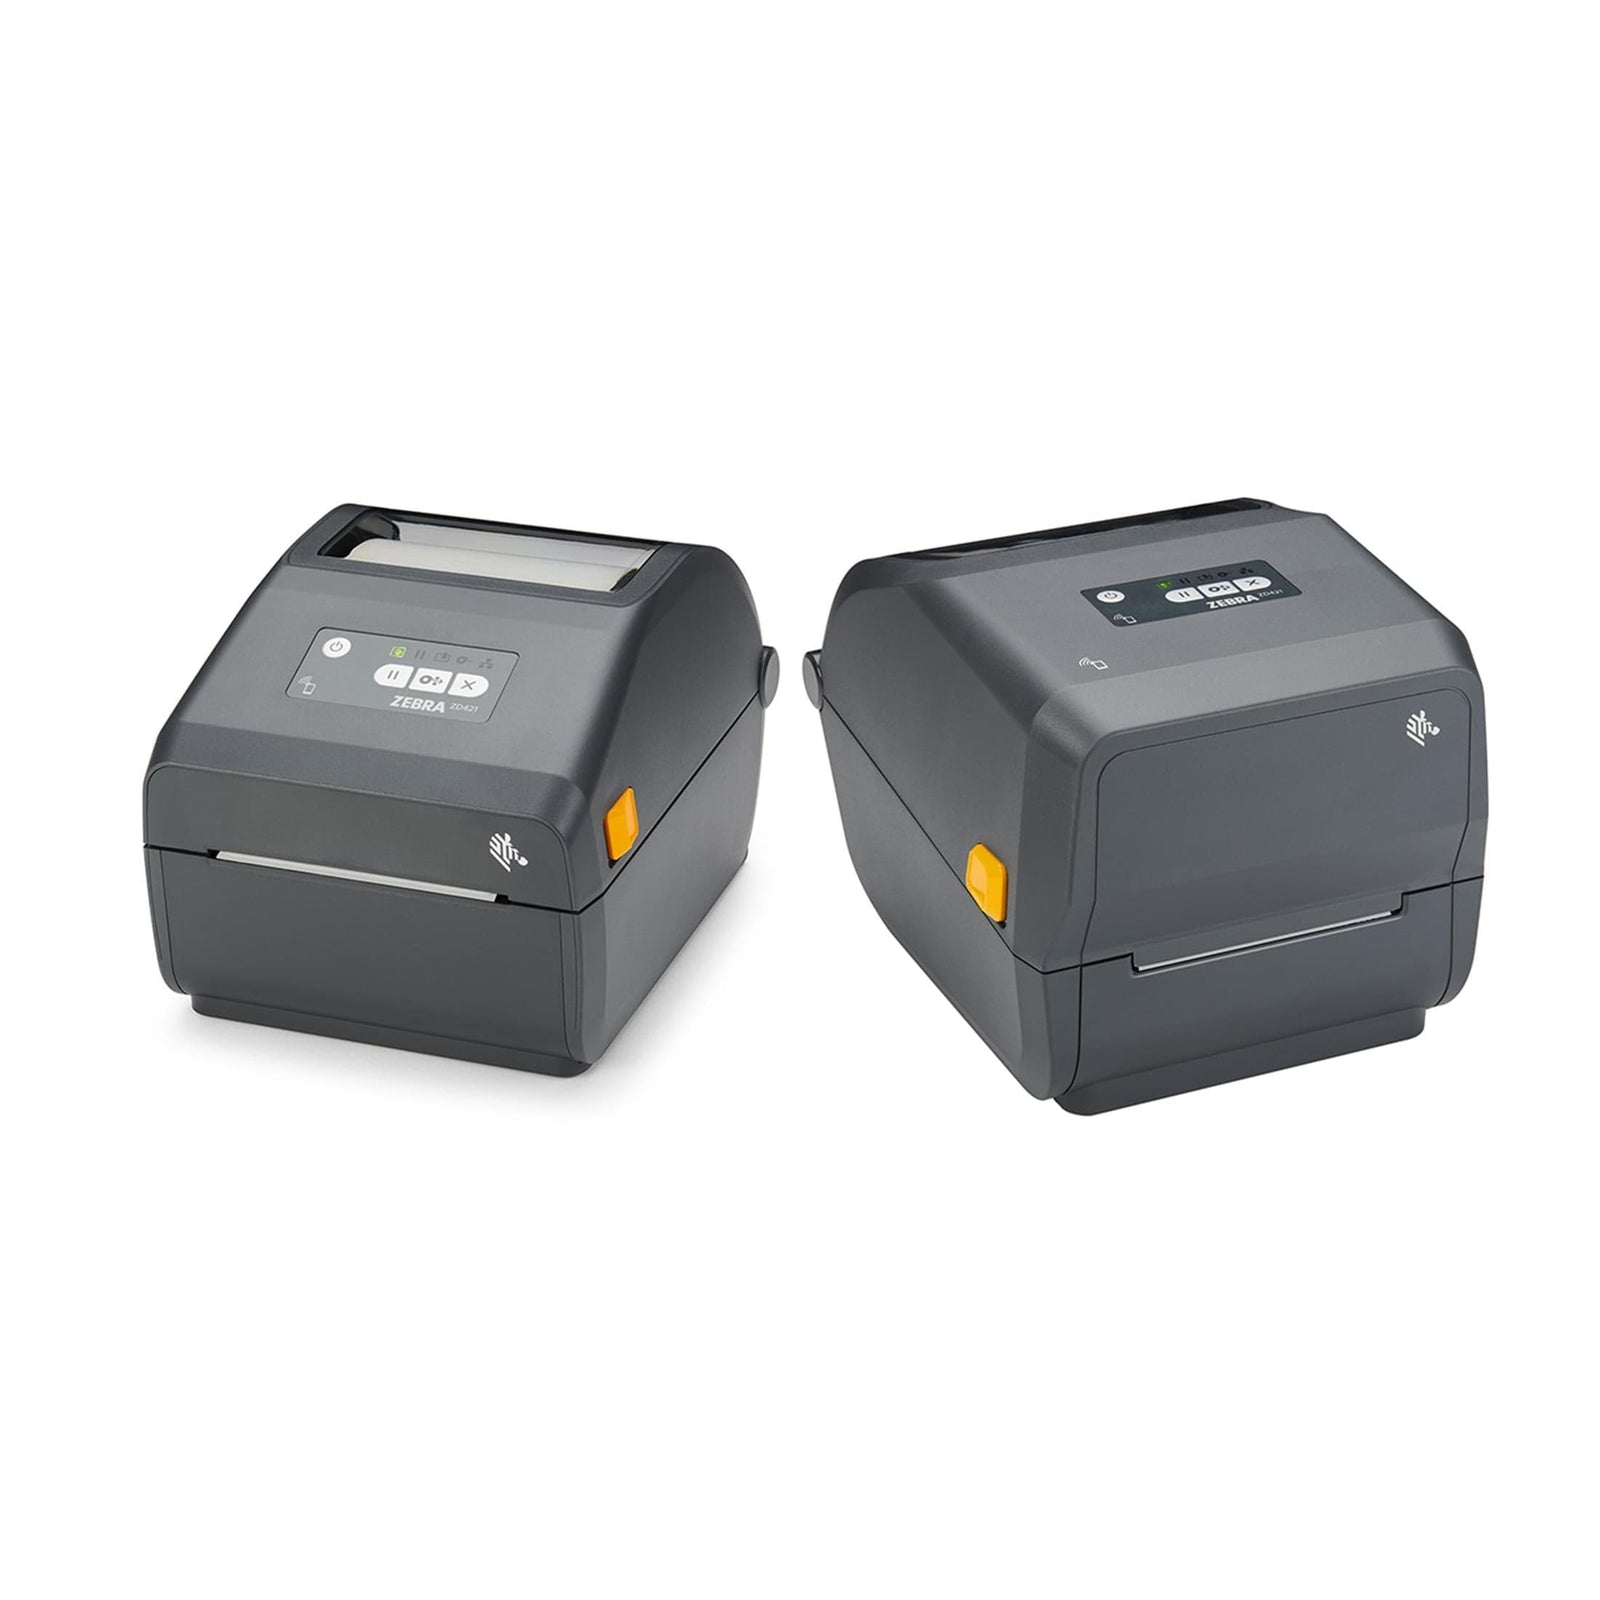 Zebra Zd421 Label Printer Thermal Transfer 203 X 203 Dpi Wired Zd4a042 5359